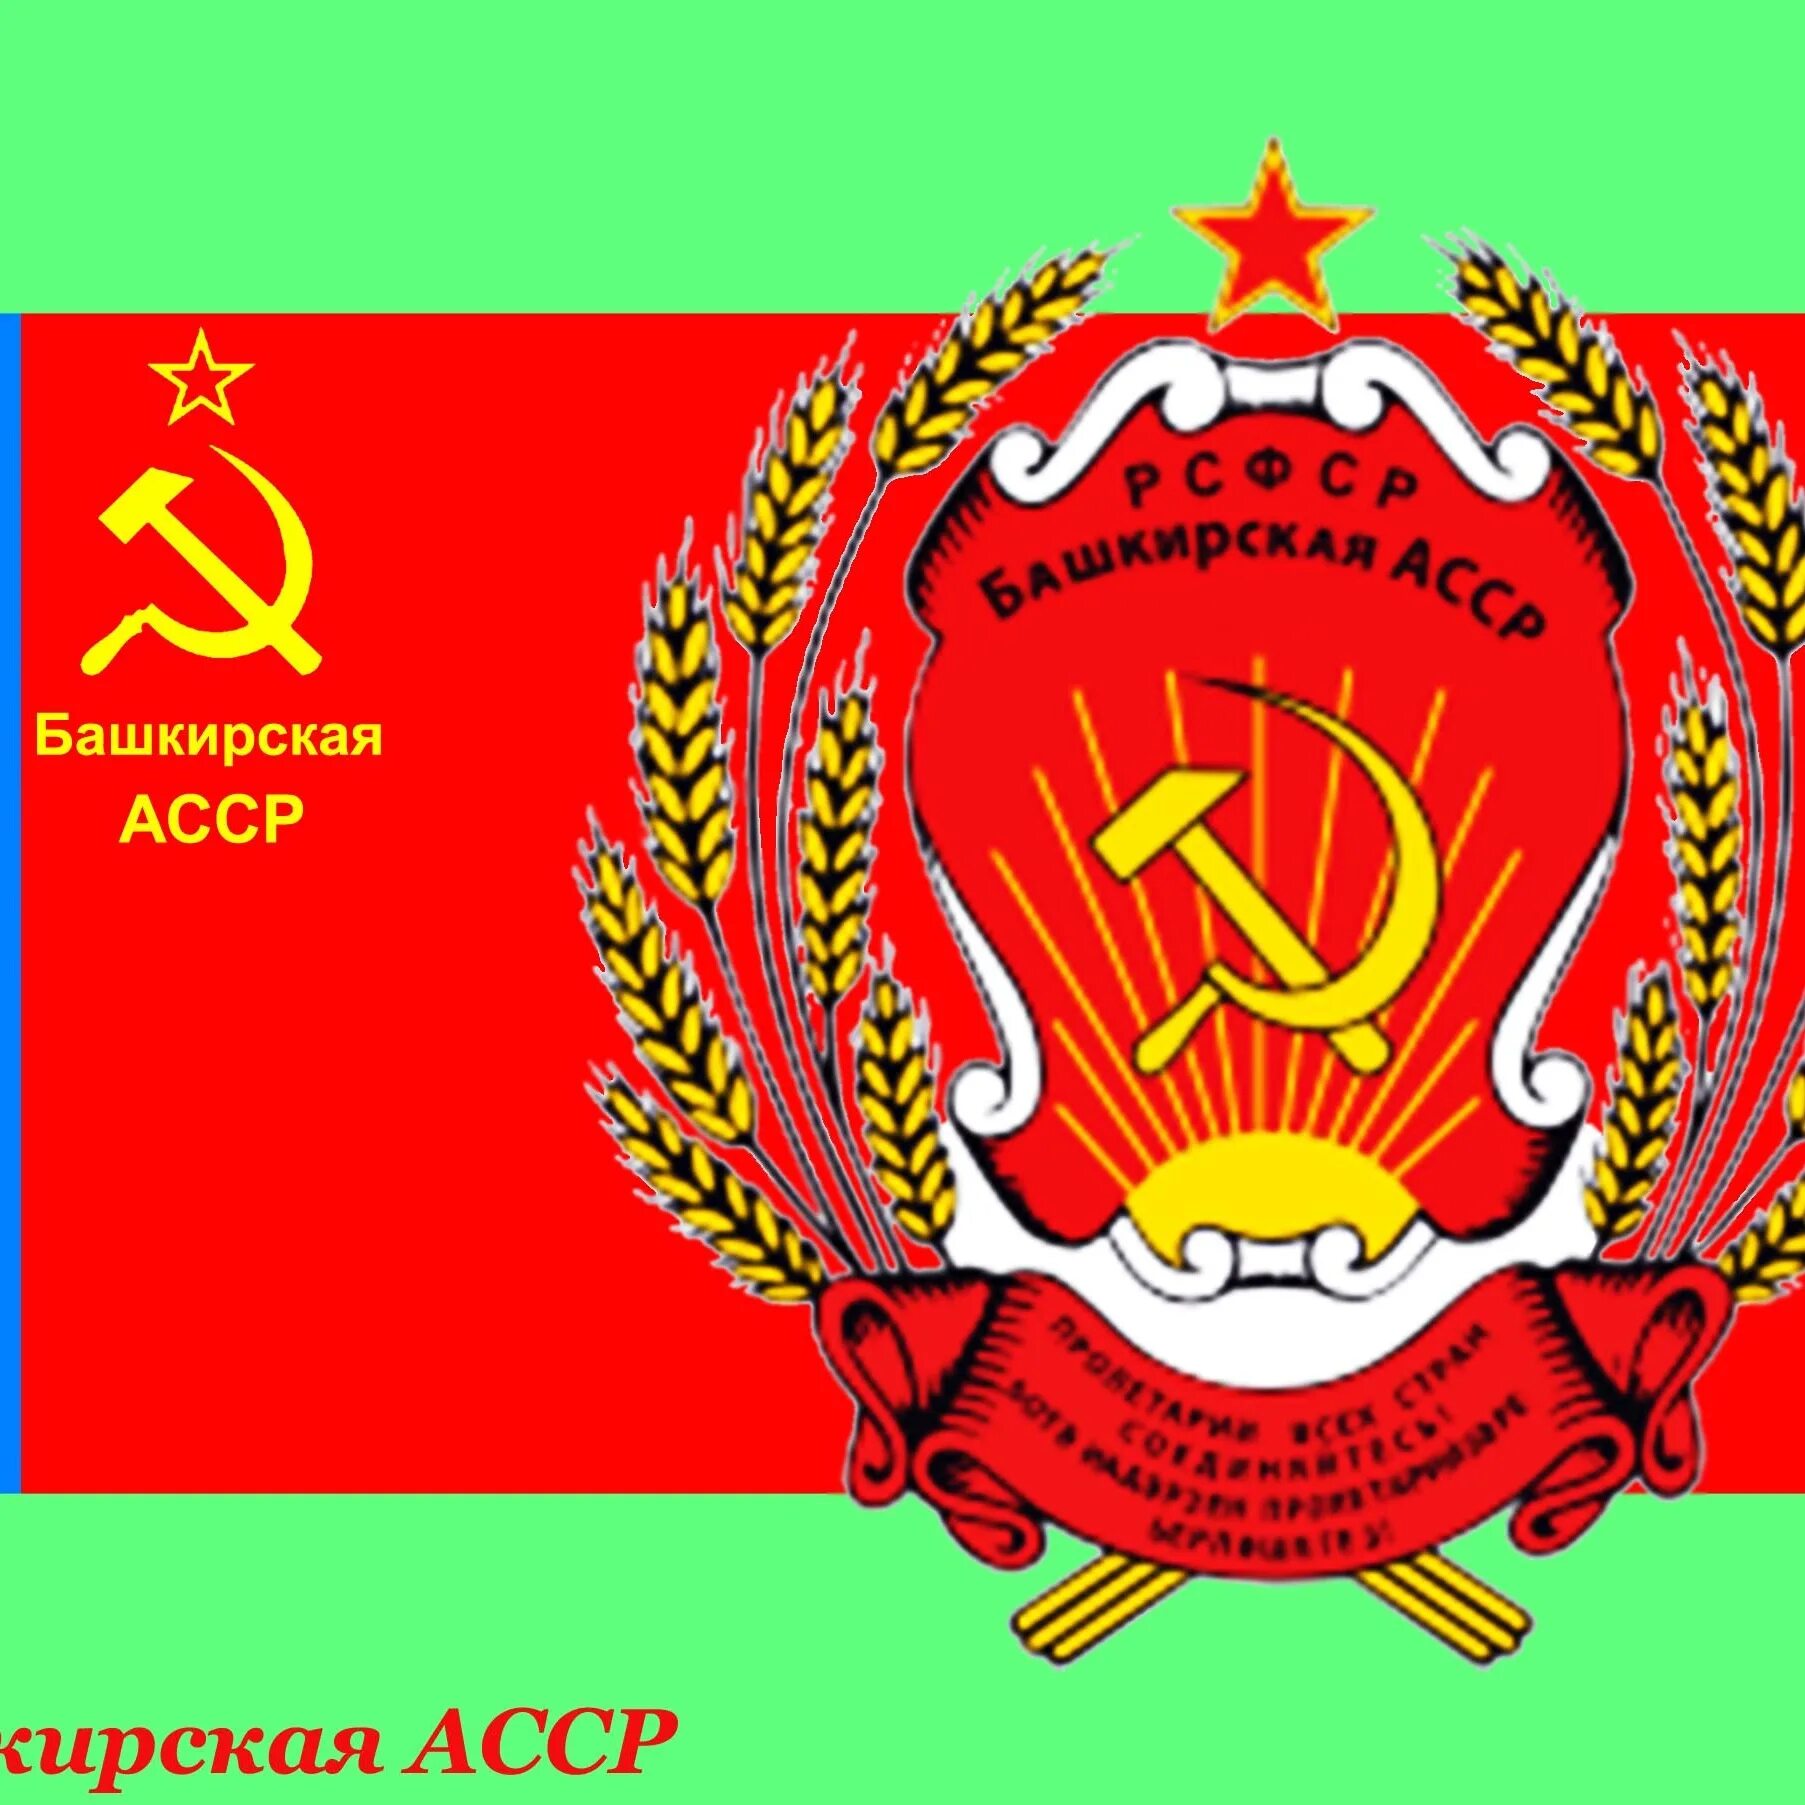 Автономной башкирской советской республики